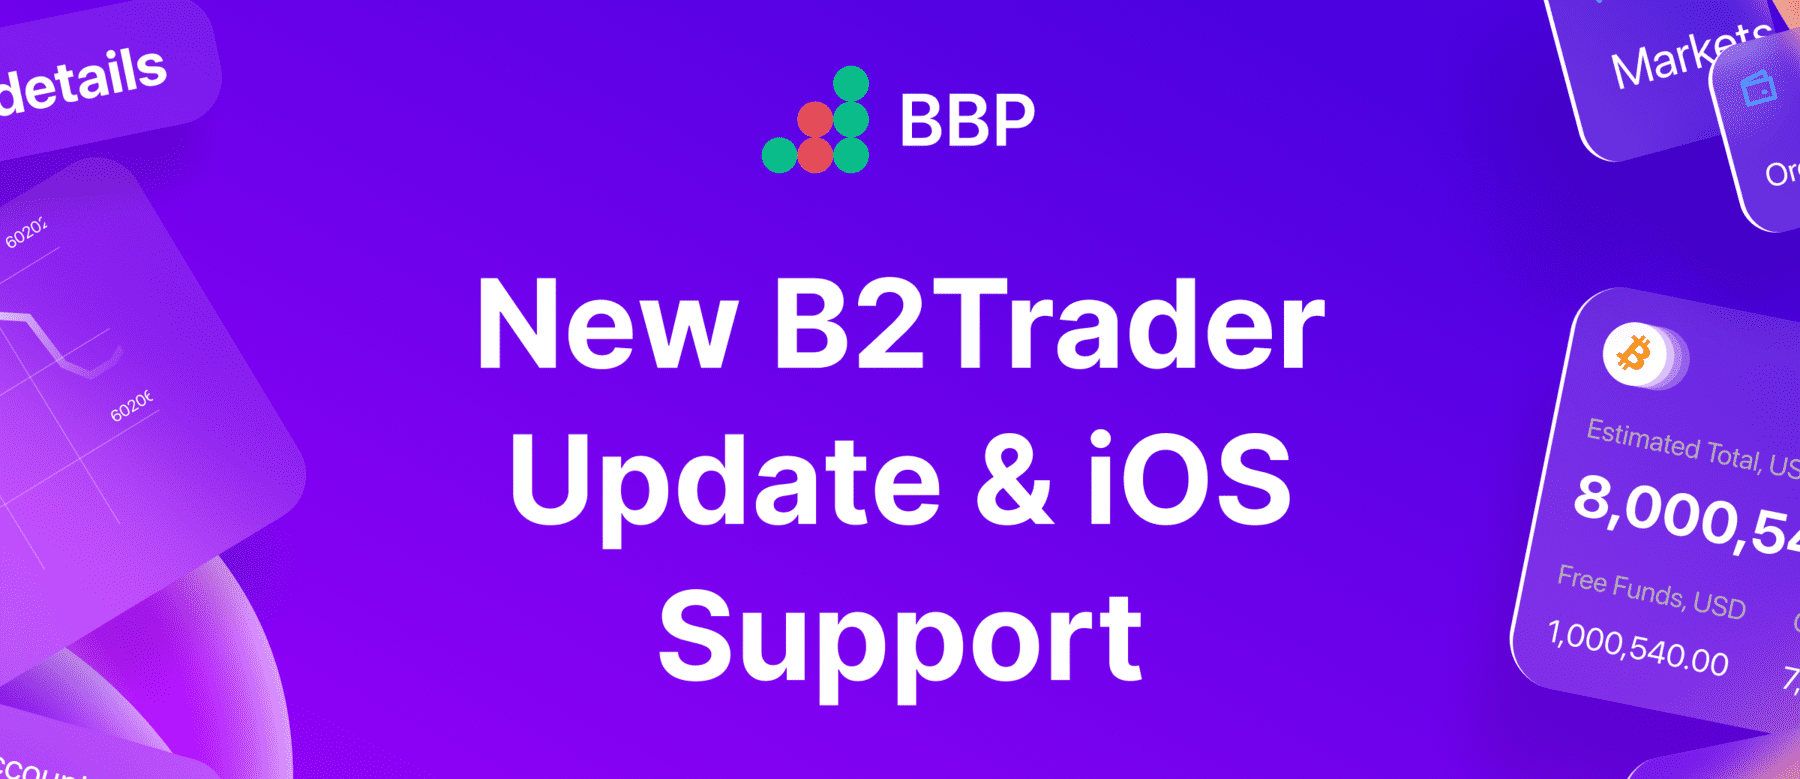 Introduciendo B2Trader v1.1: BBP Prime, Reportes Mejorados y Personalización, y Soporte para iOS